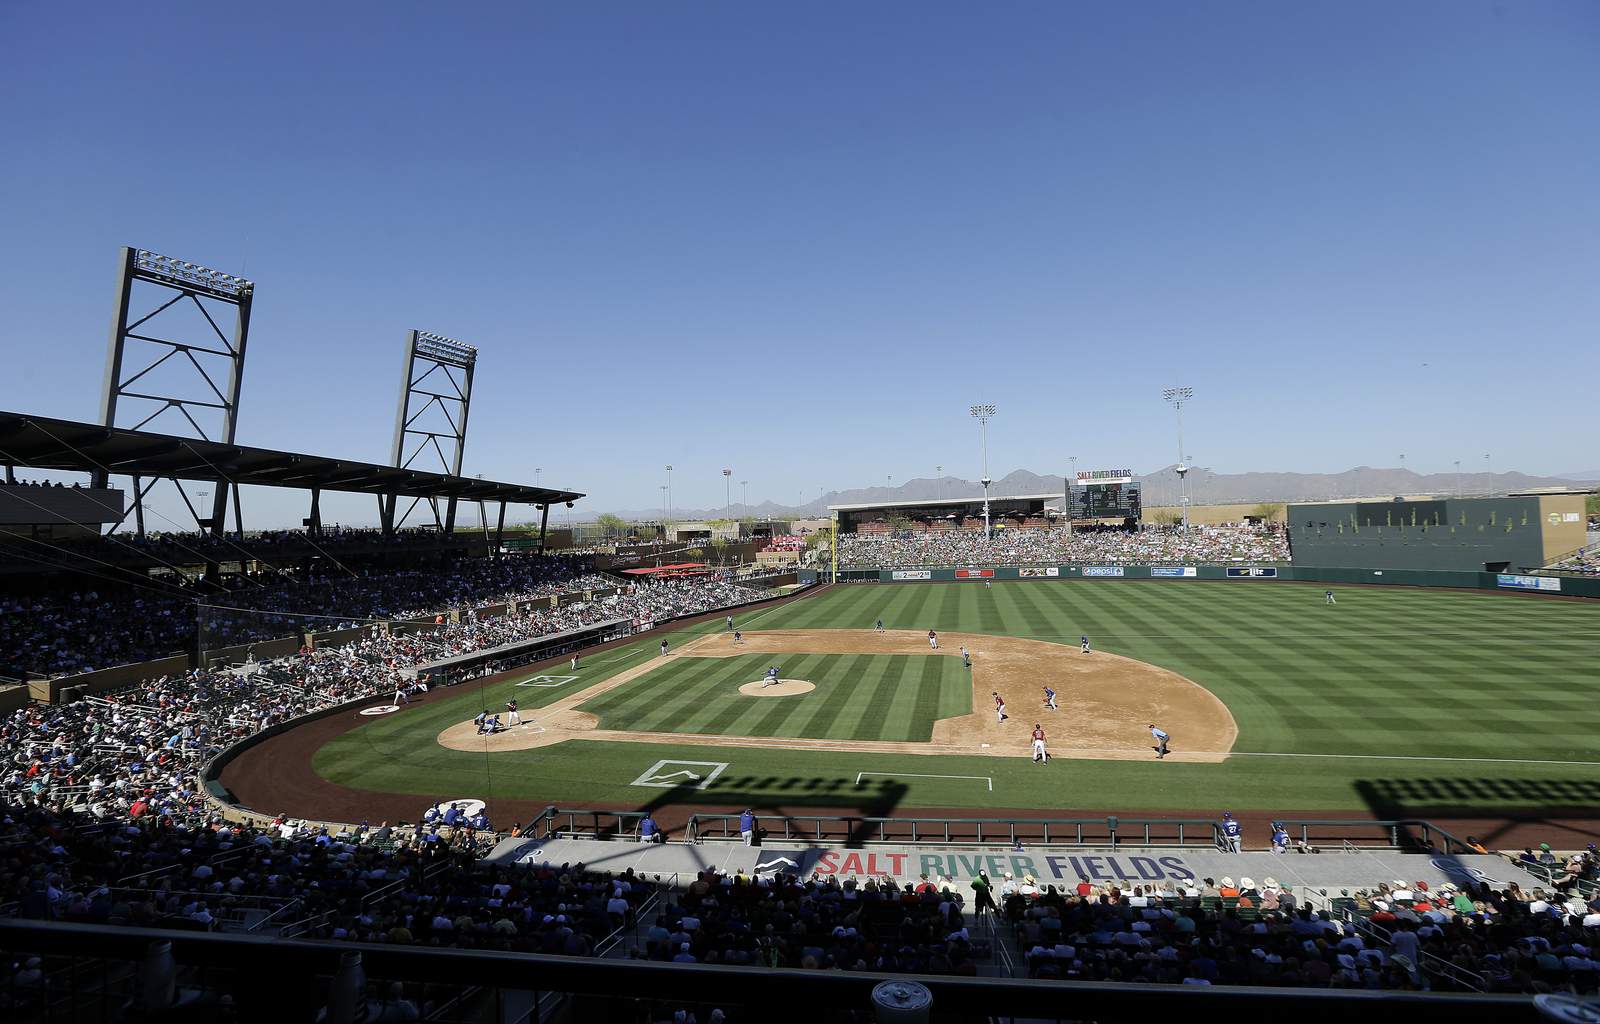 MLB spring training still a hot ticket in Arizona